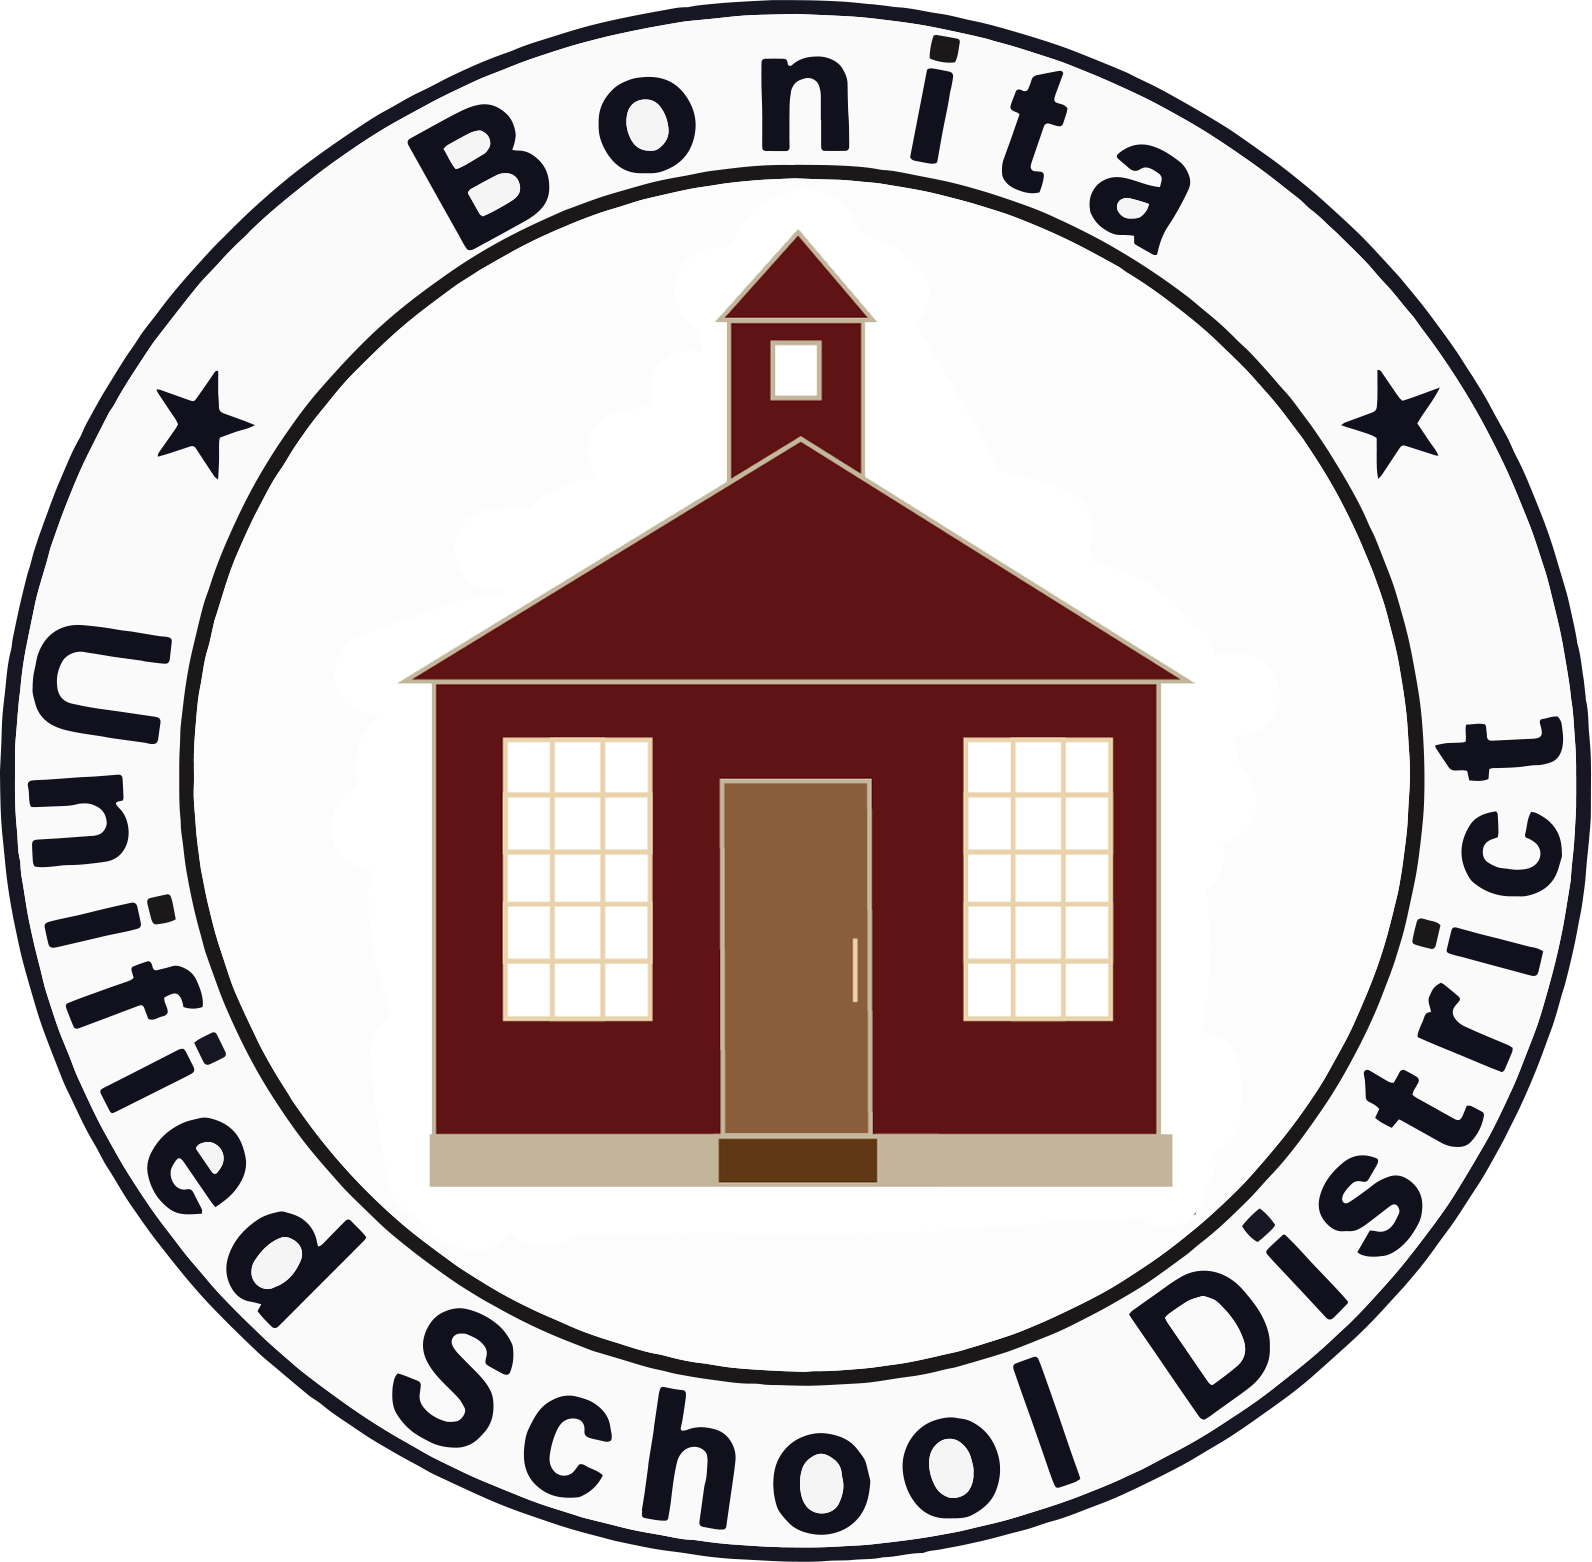 District logo